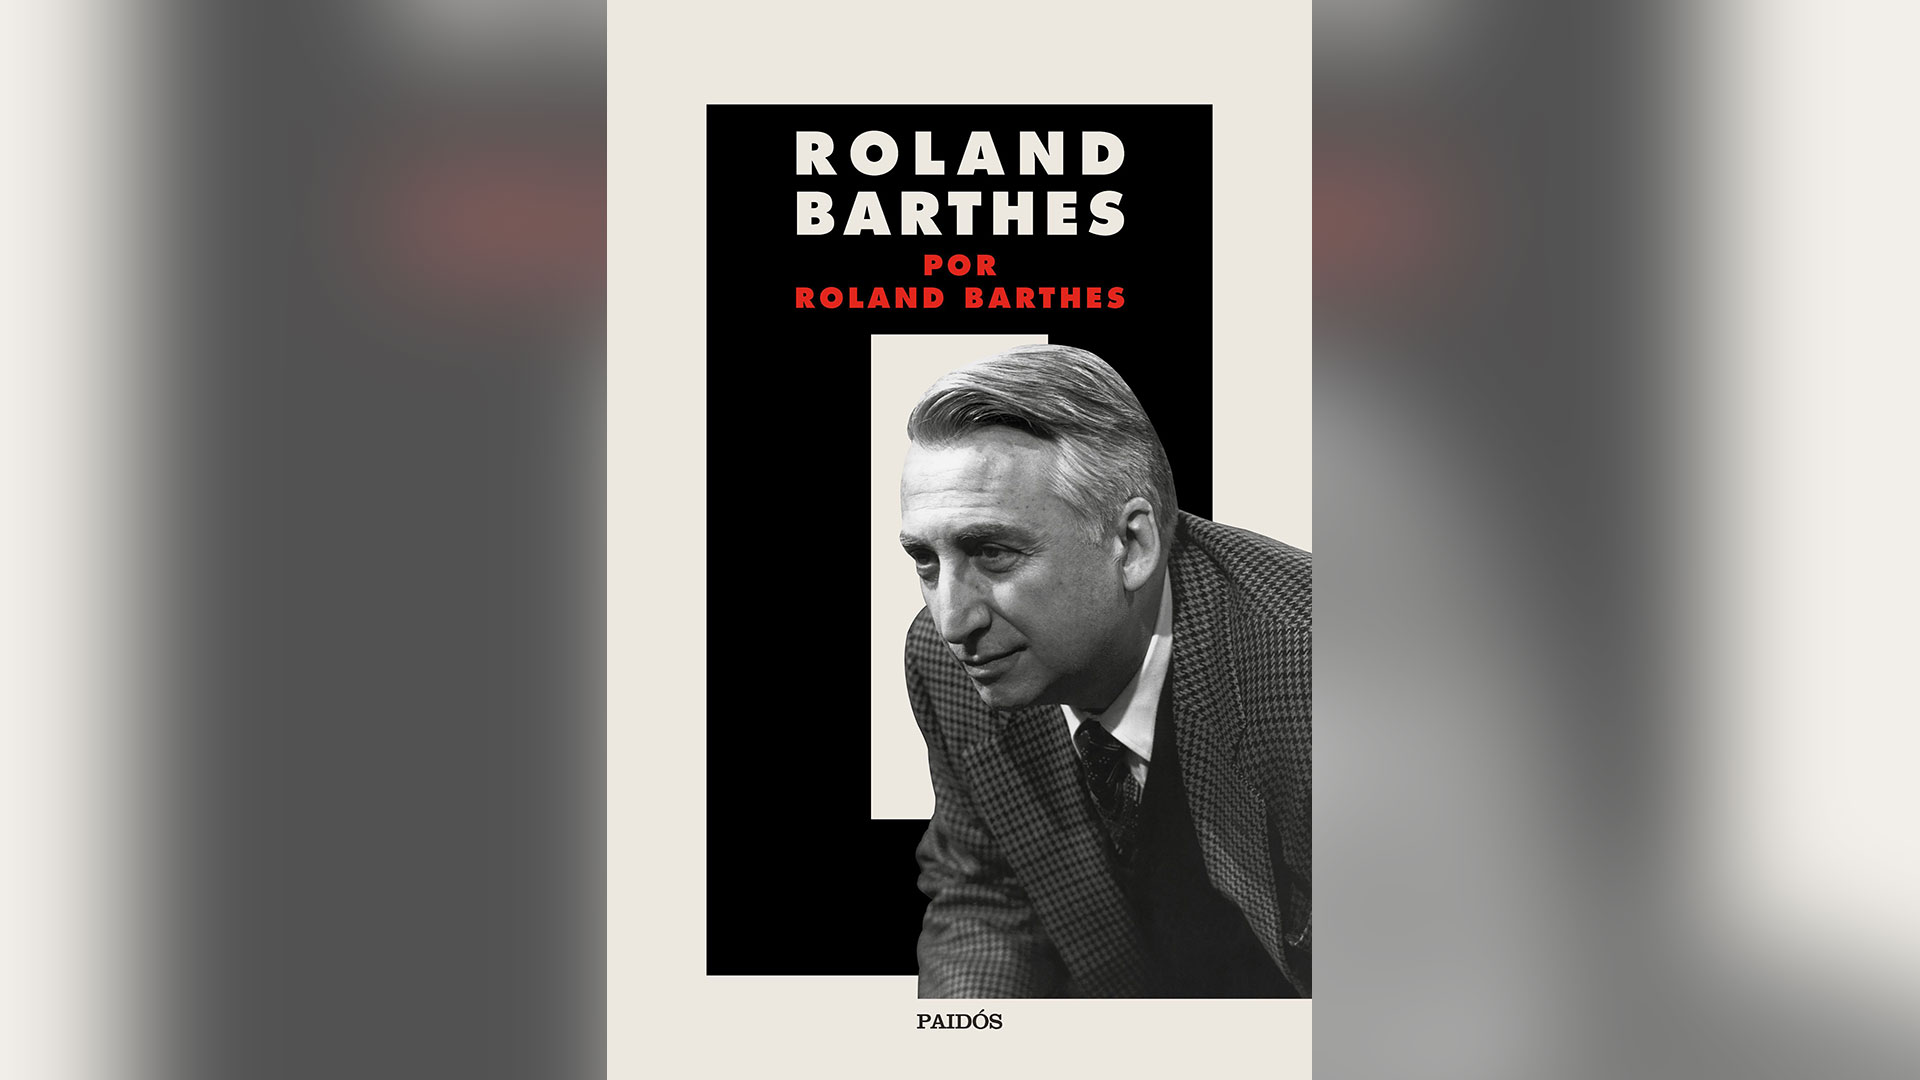 "Roland Barthes por Roland Barthes", libro editado por Paidós